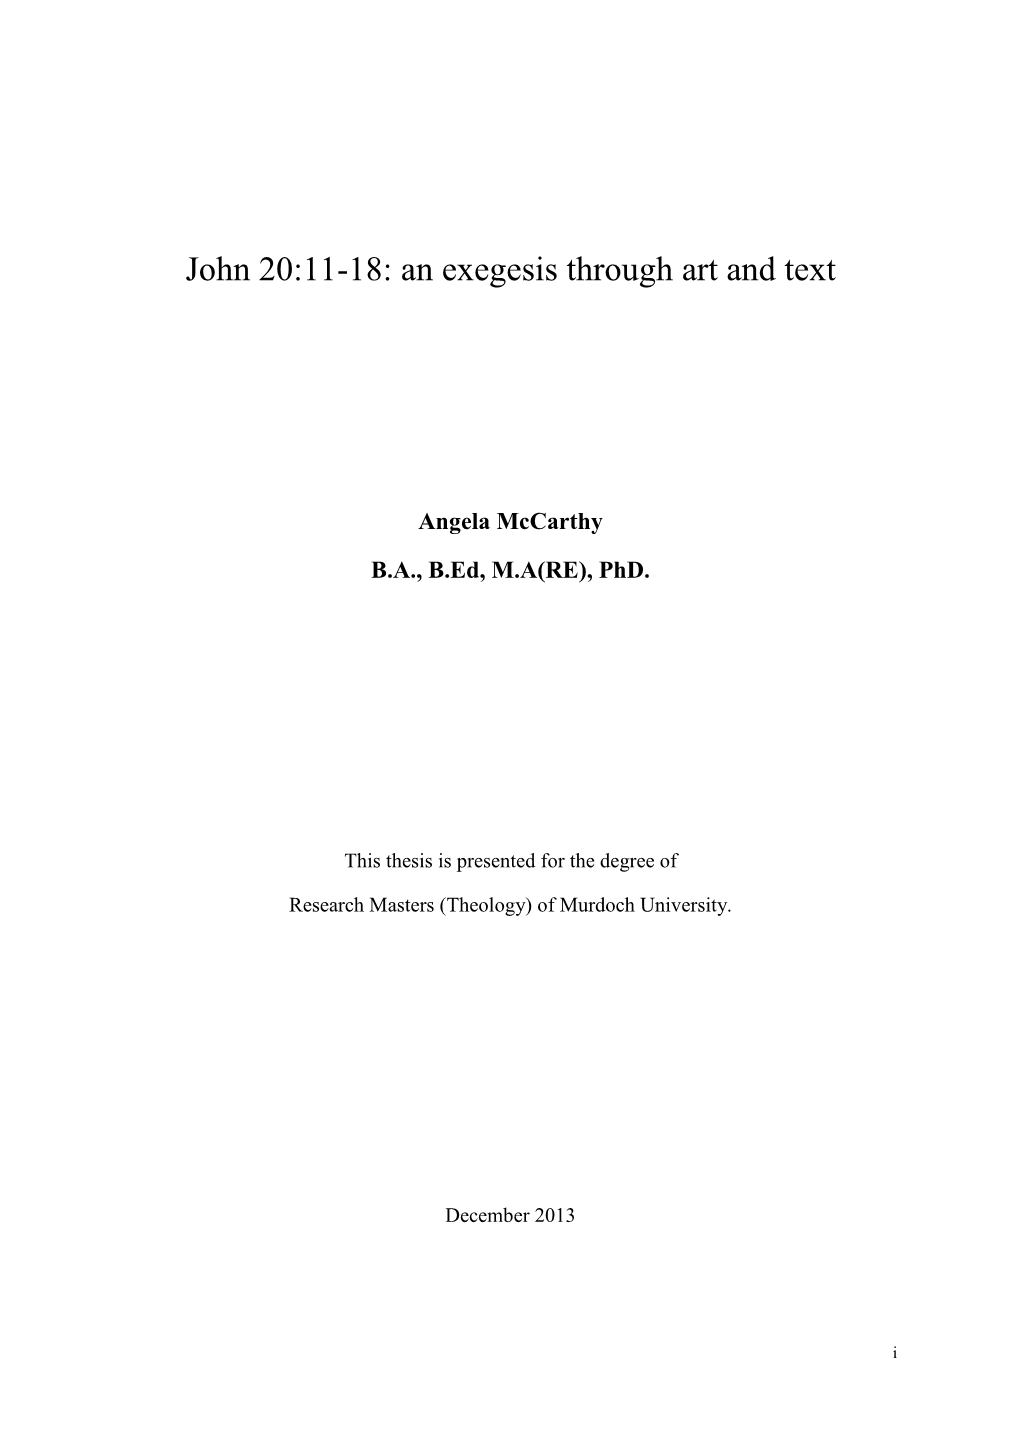 John 20:11-18: an Exegesis Through Art and Text